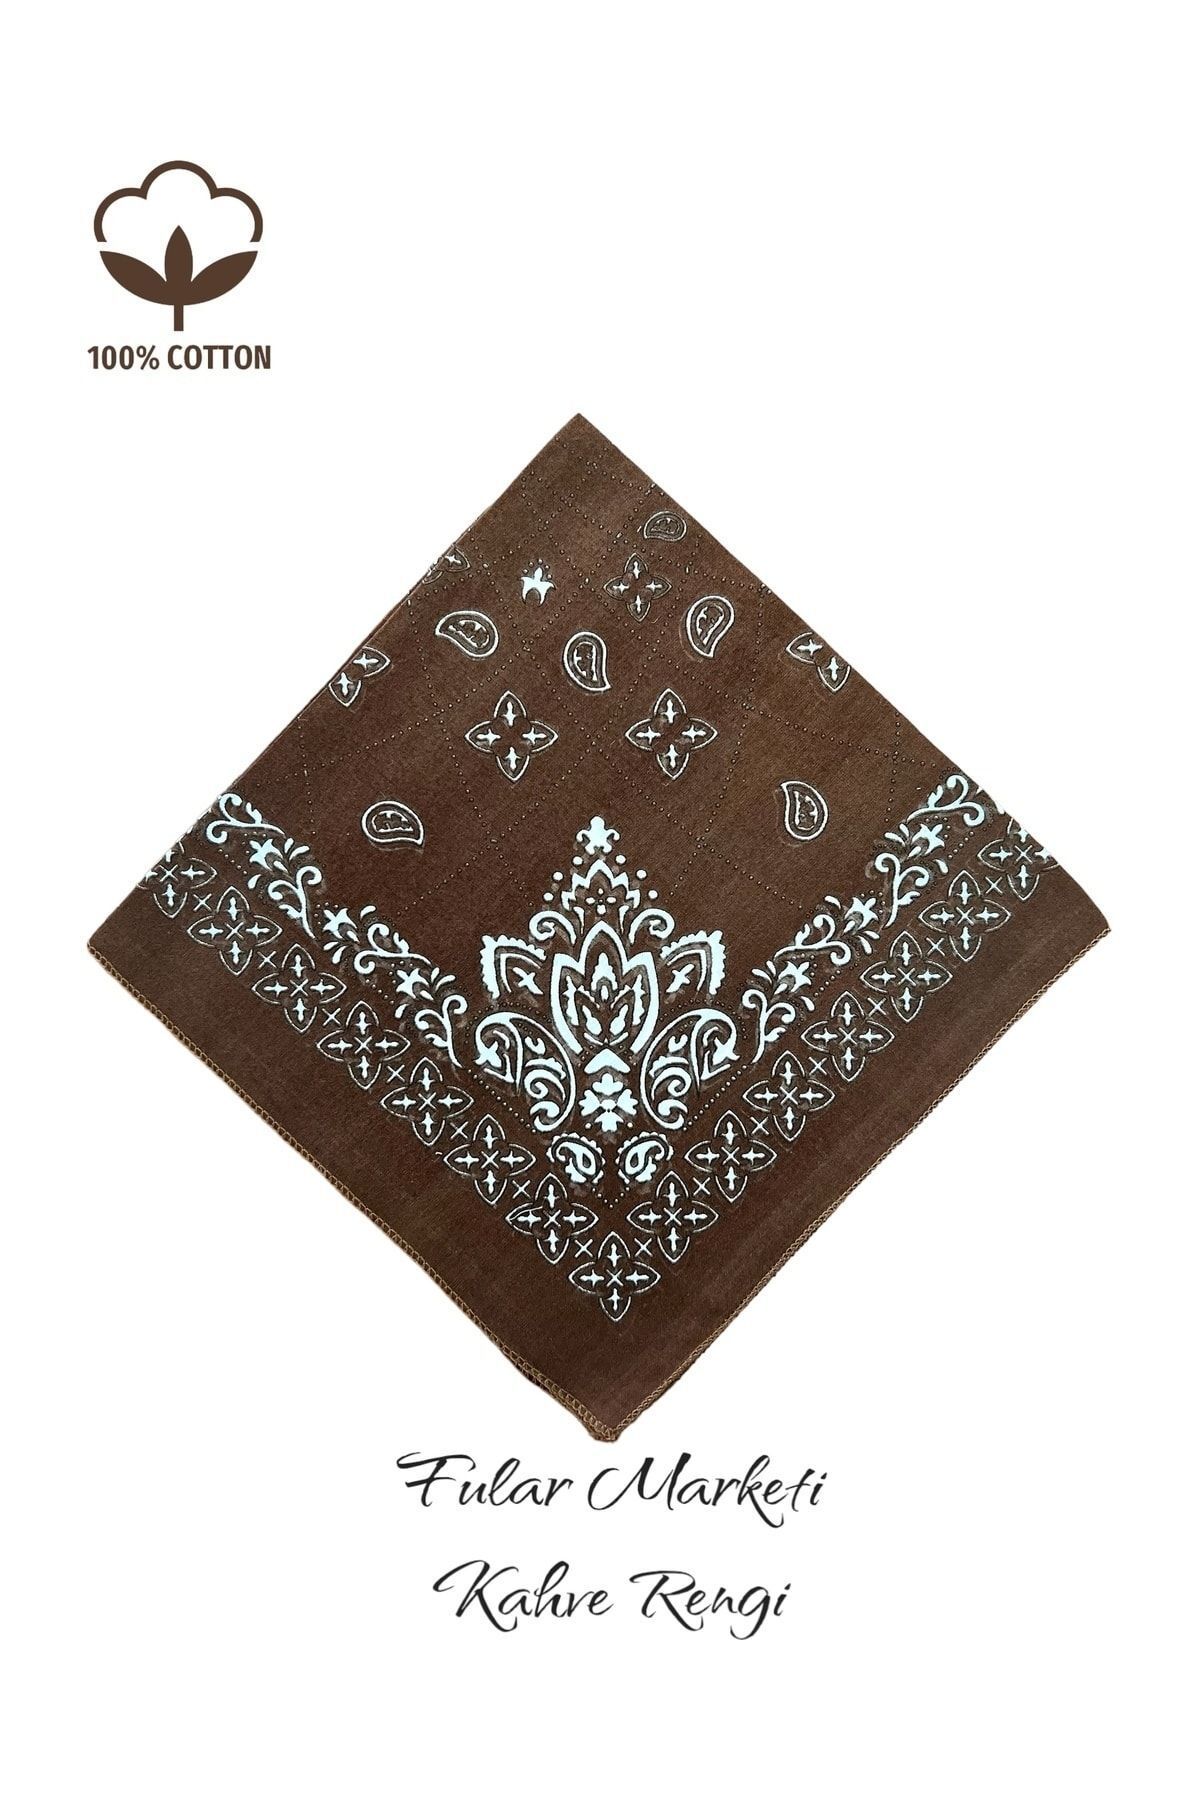 Fular Marketi %100 Pamuklu Elegance Desen K.rengi Sepete 5 Adet Ekle 4 Adet Öde Kampanyalı 1 Adet Fiyatıdır